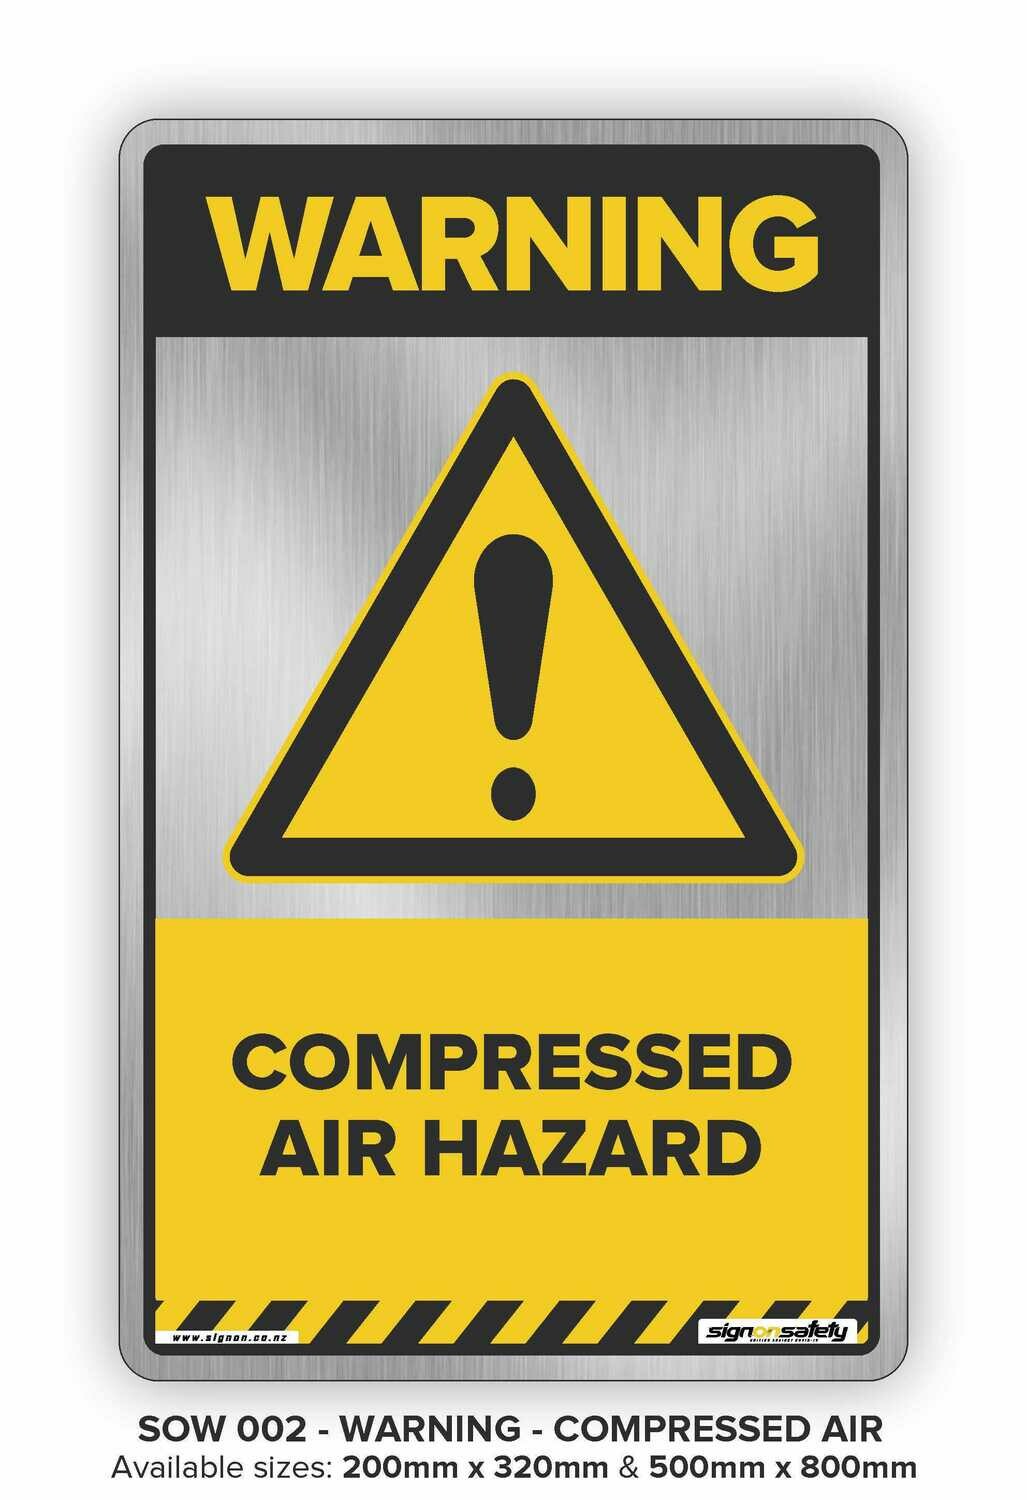 Warning - Compressed Air Hazard